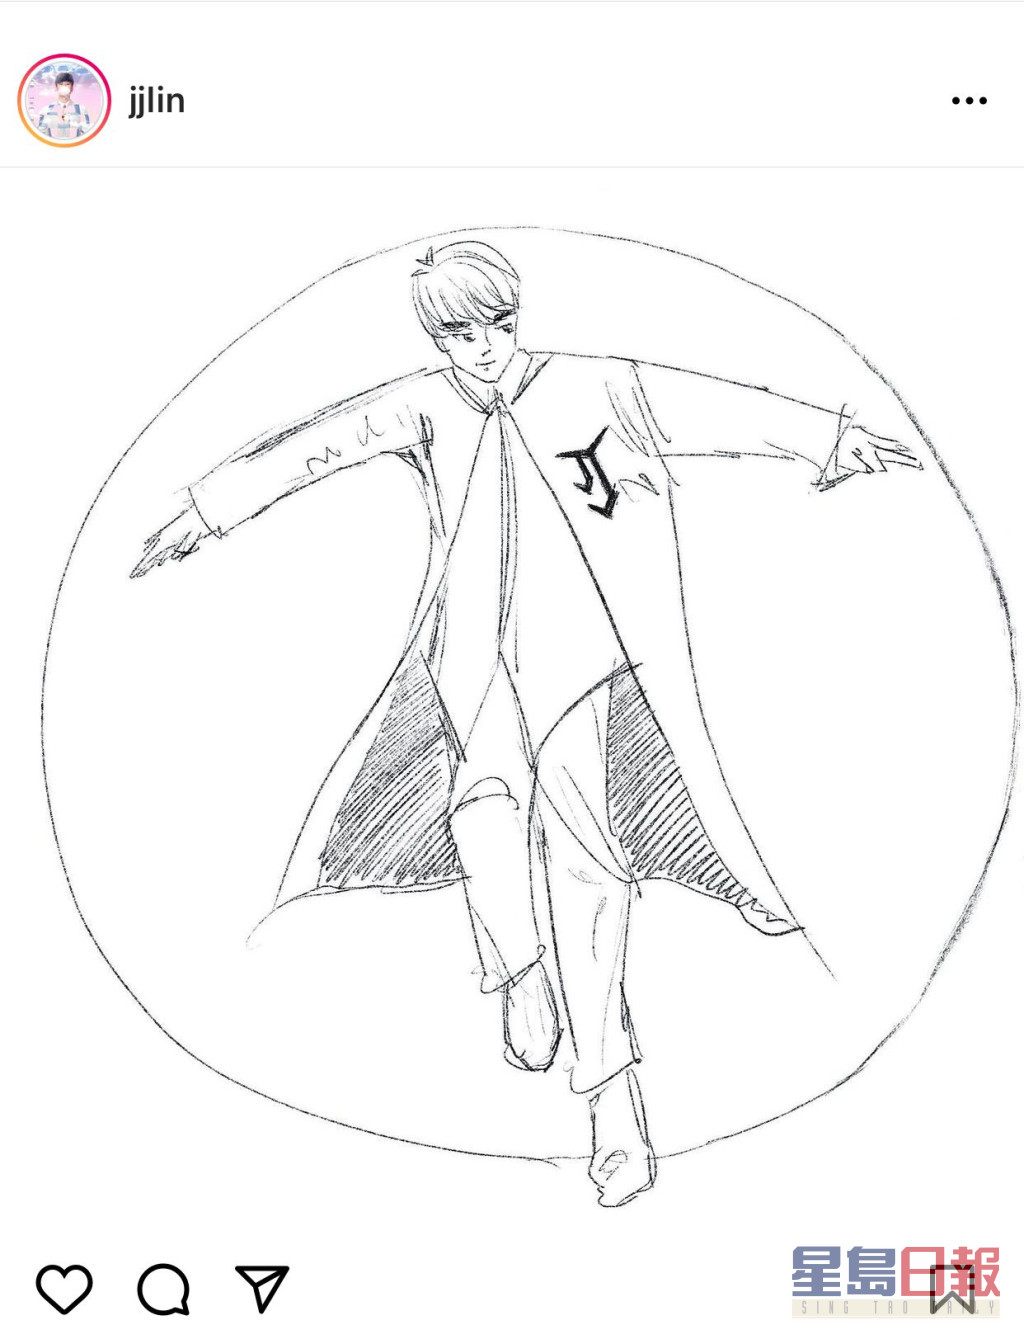 林俊杰的素描画，胸前有代表他的JJ标志。